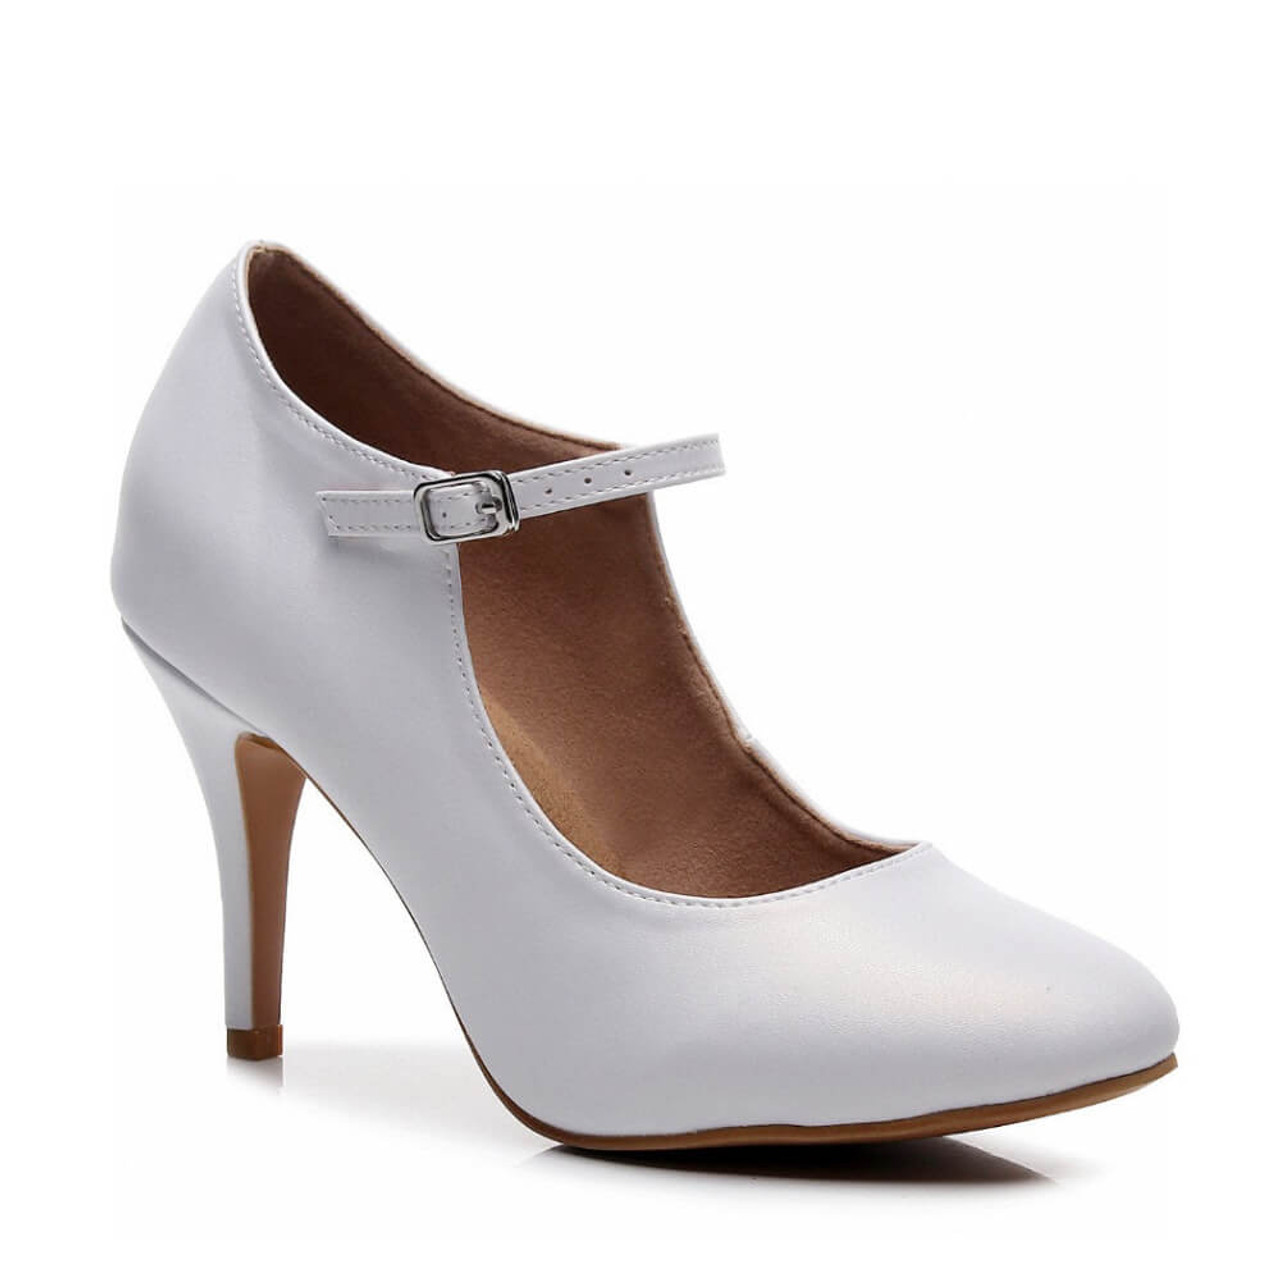 Buy Elle Women's White Stiletto Pumps for Women at Best Price @ Tata CLiQ